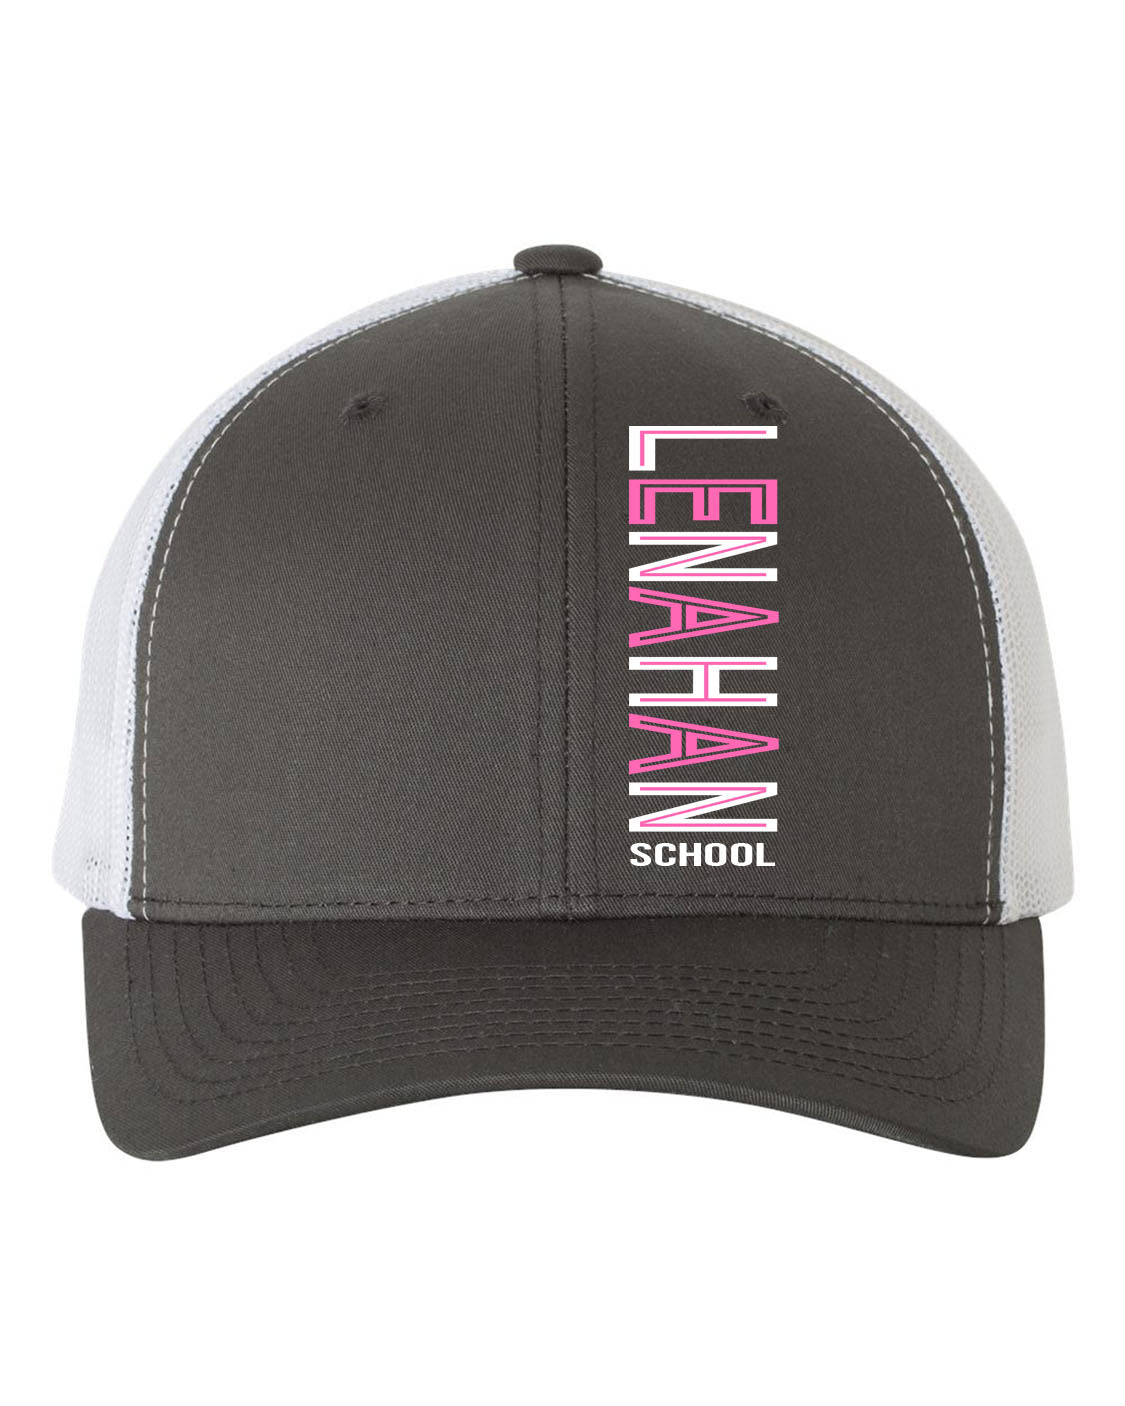 Lenahan Dance Design 3 Trucker Hat